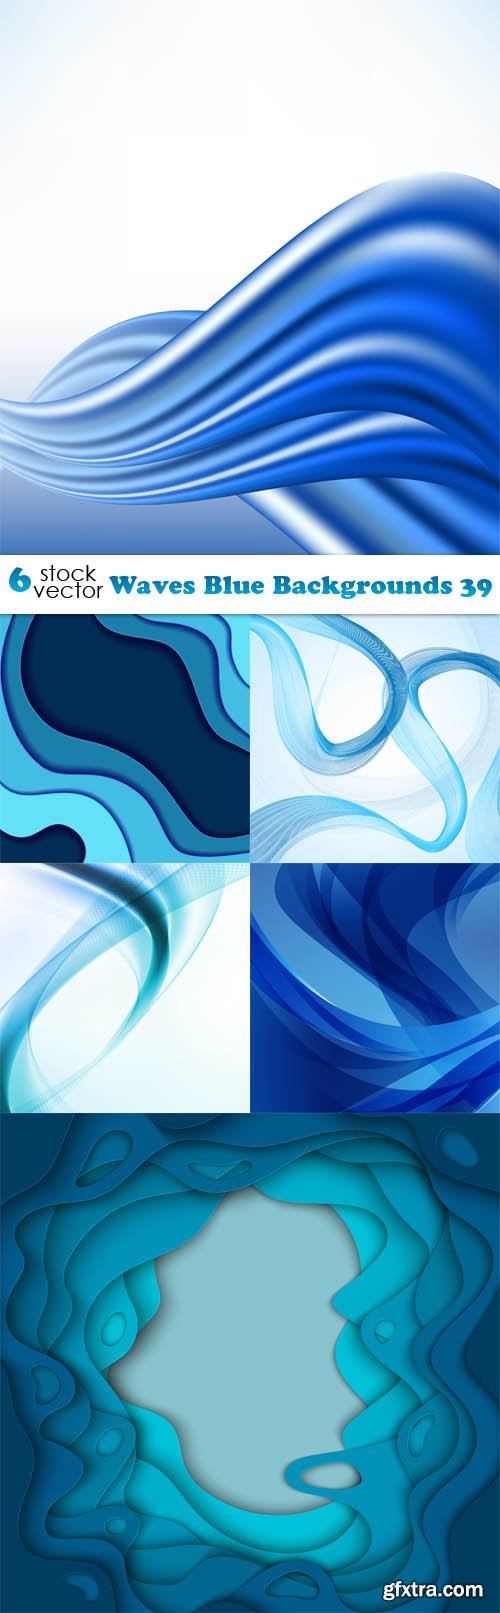 Vectors - Waves Blue Backgrounds 39